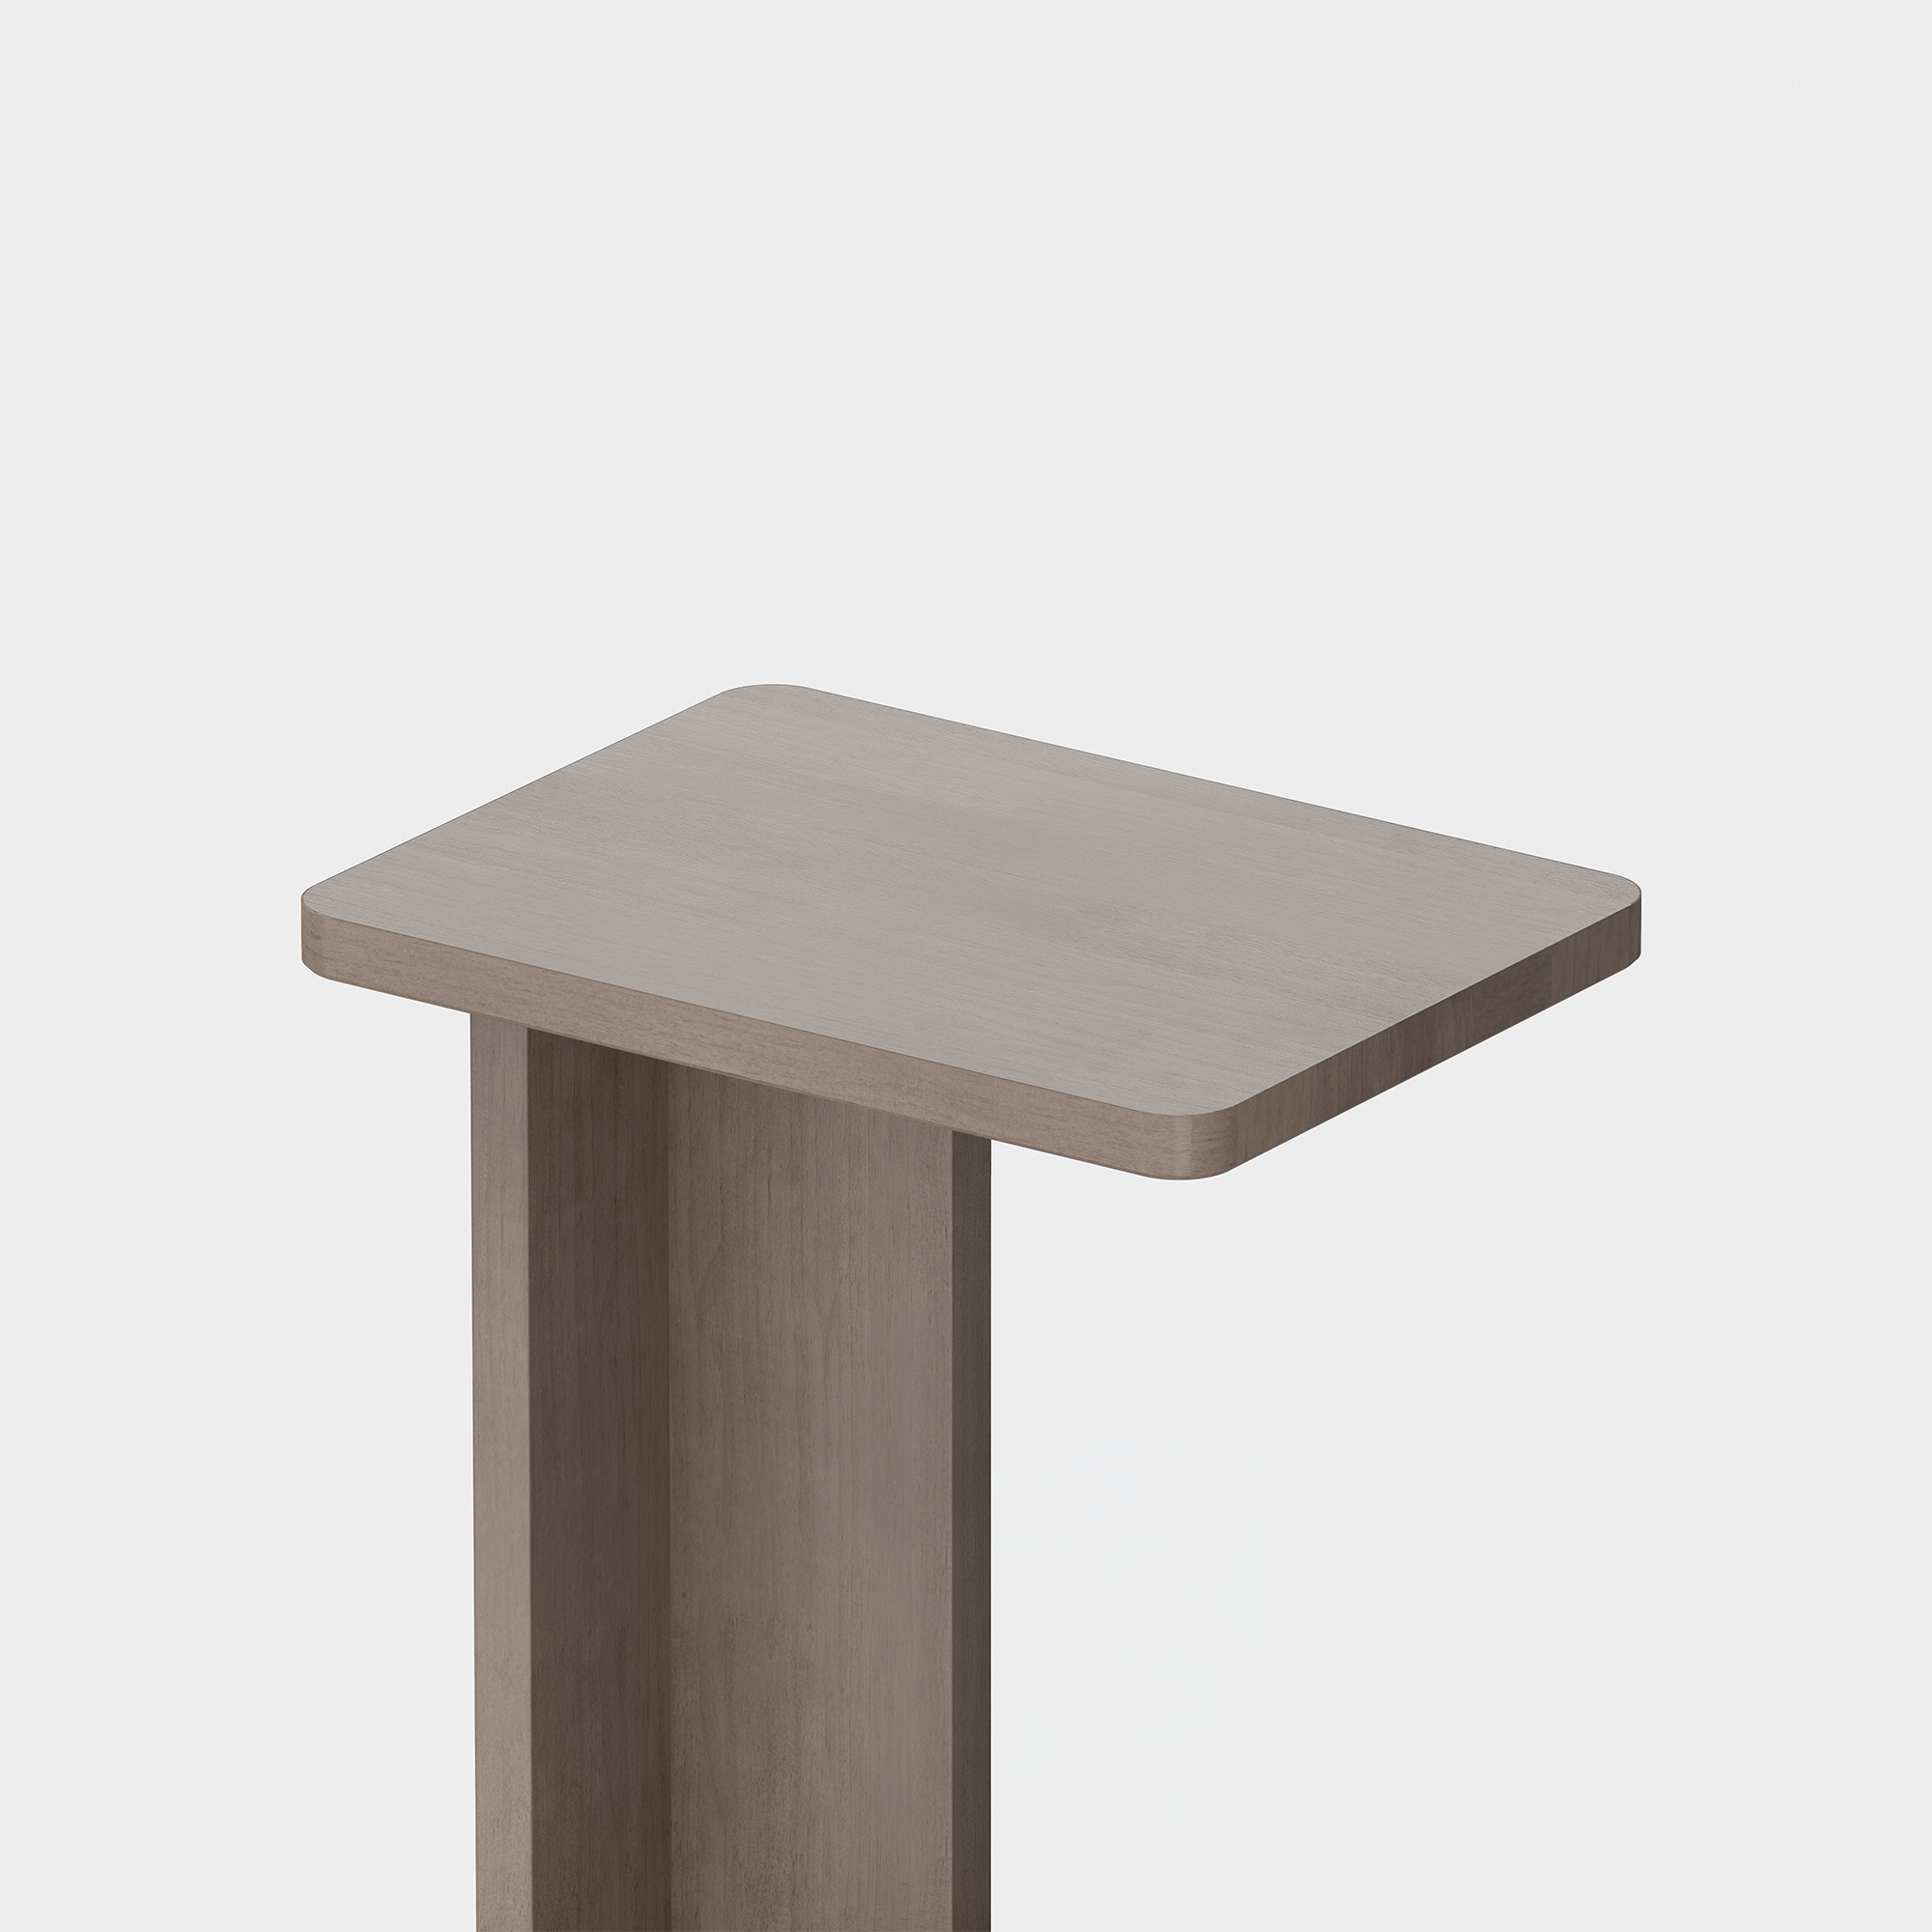 C Side Table (Grey) - Render - Top